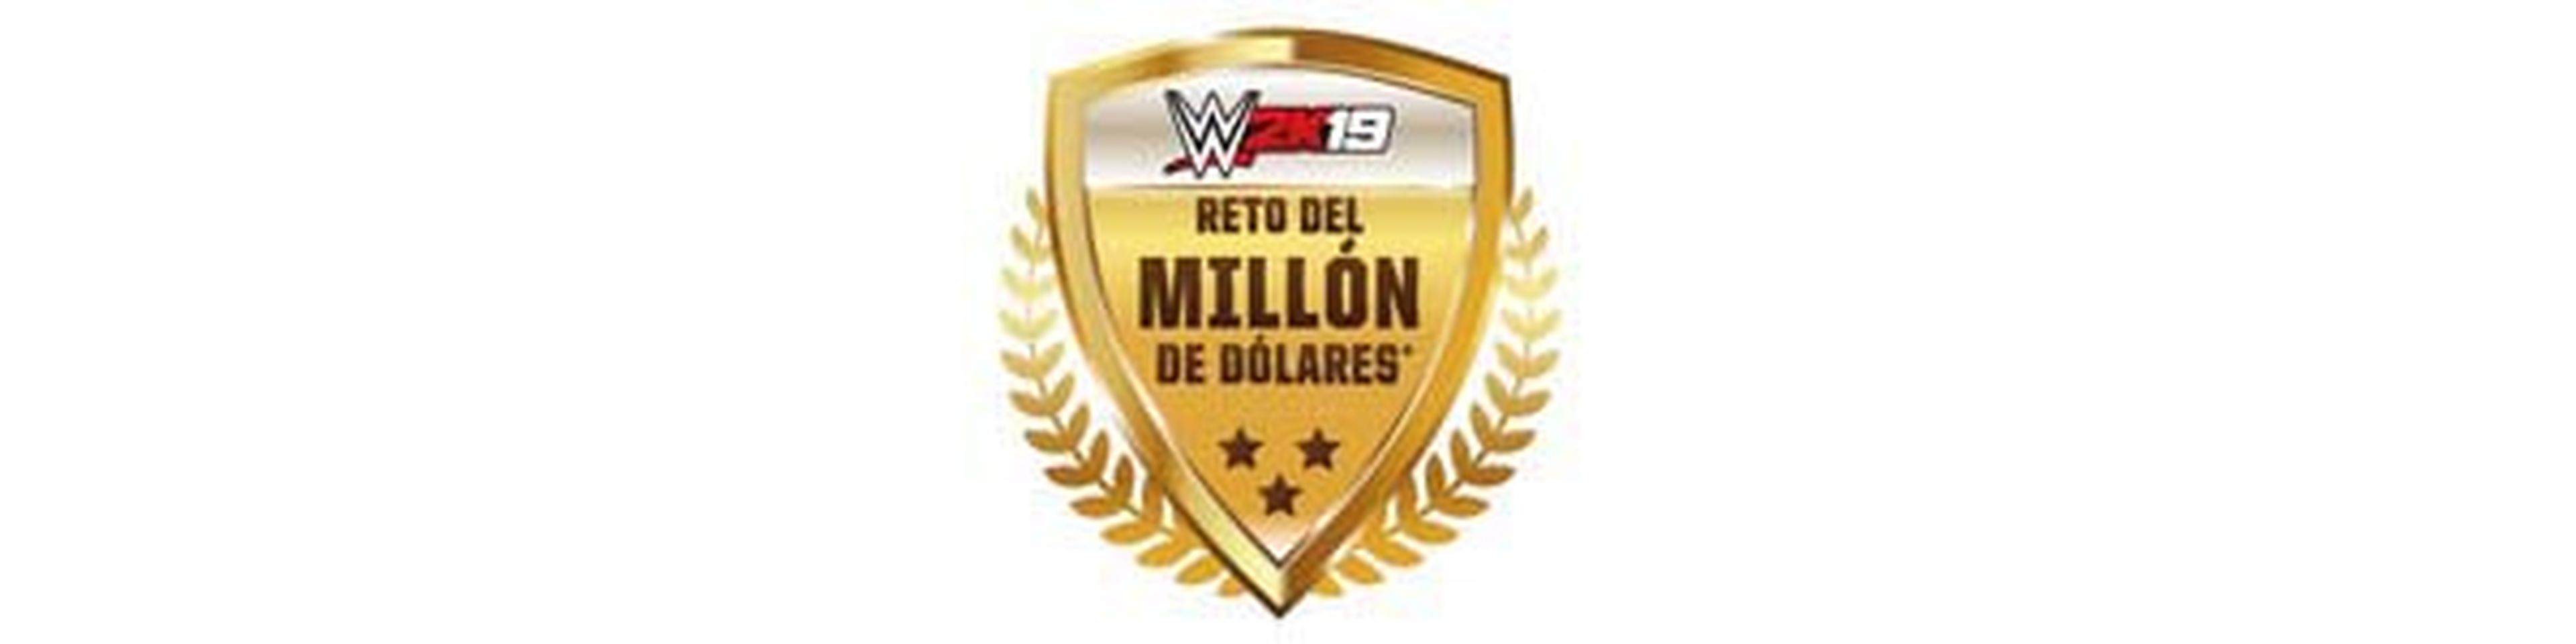 WWE 2K19 Reto del millón de dólares